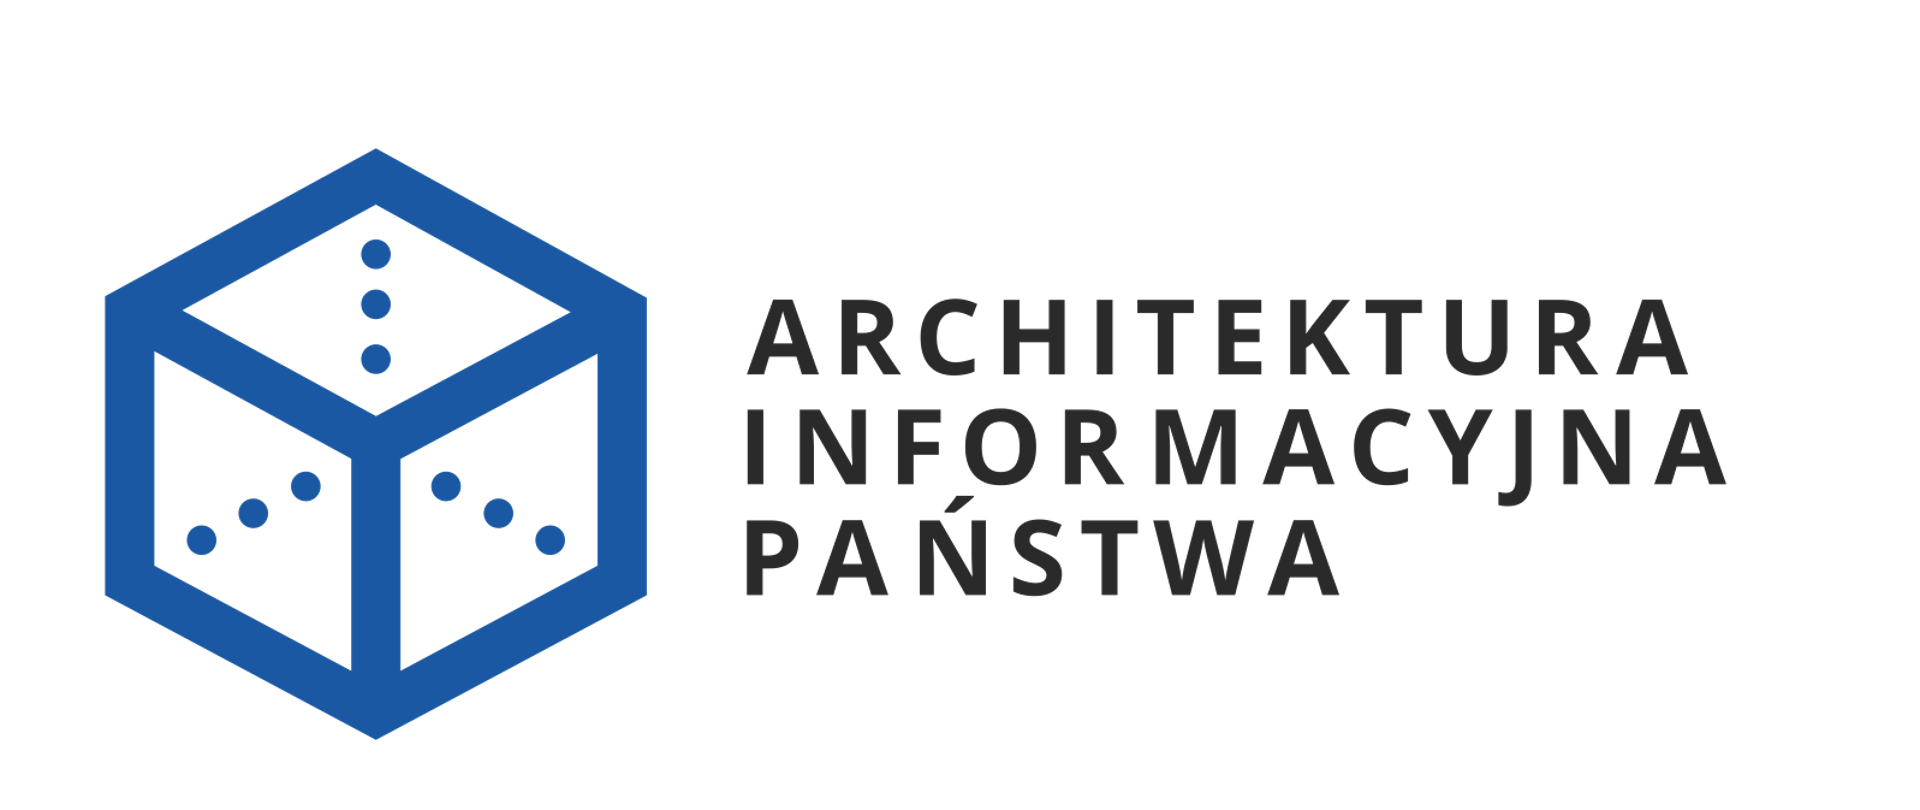 Architektura Informacyjna Państwa - logo